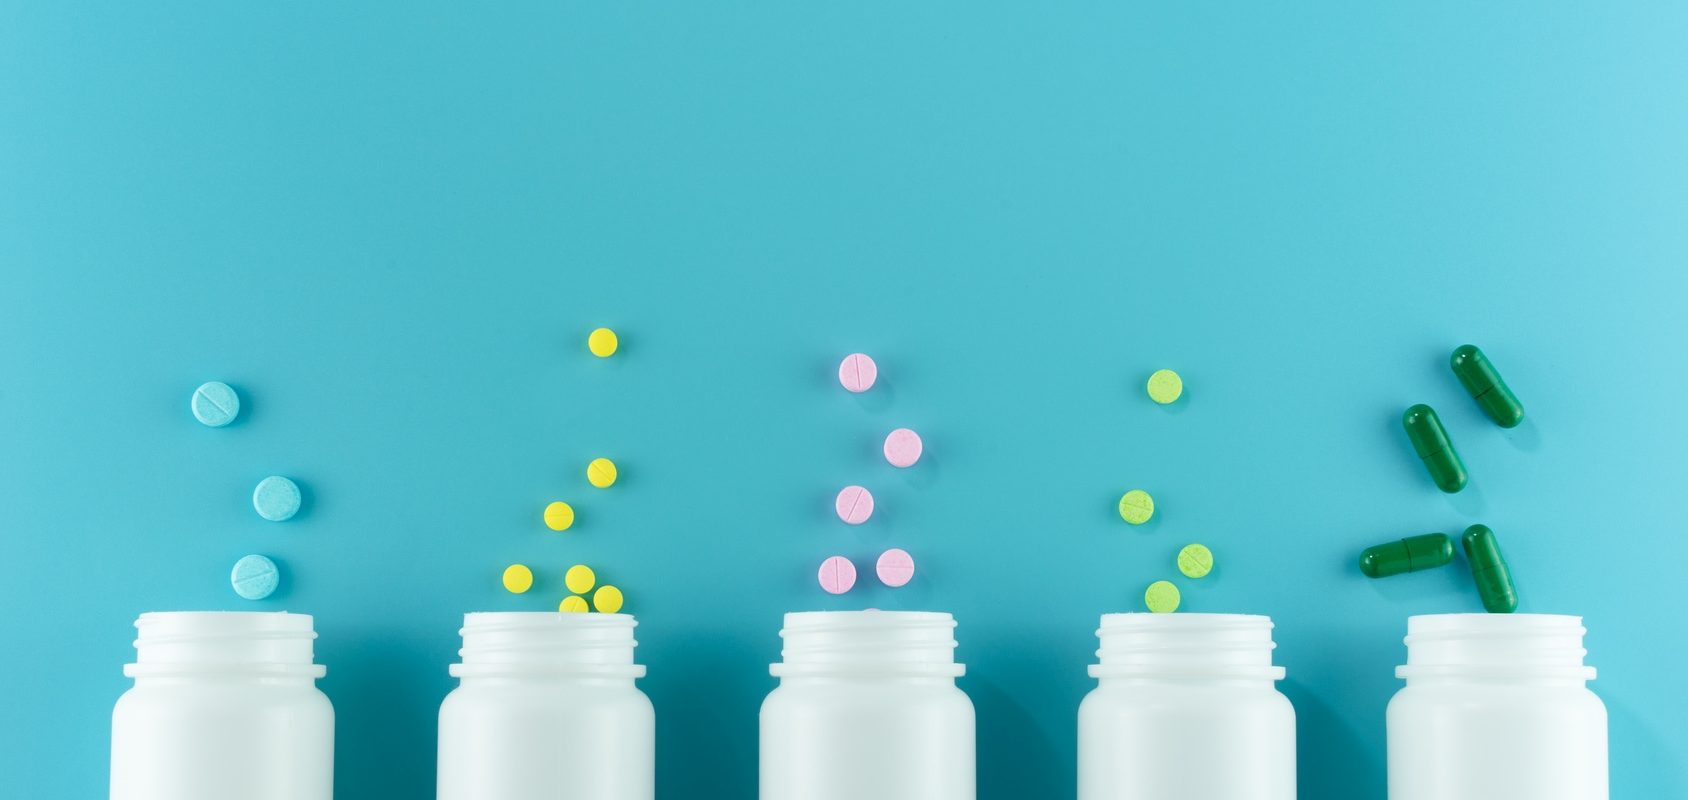 Jak działają leki i jak przyjmować leki, aby były dla nas bezpieczne? Jak uniknąć interakcji pomiędzy lekami oraz lekami a żywnością? Białe opakowania leków na niebieskim tle.